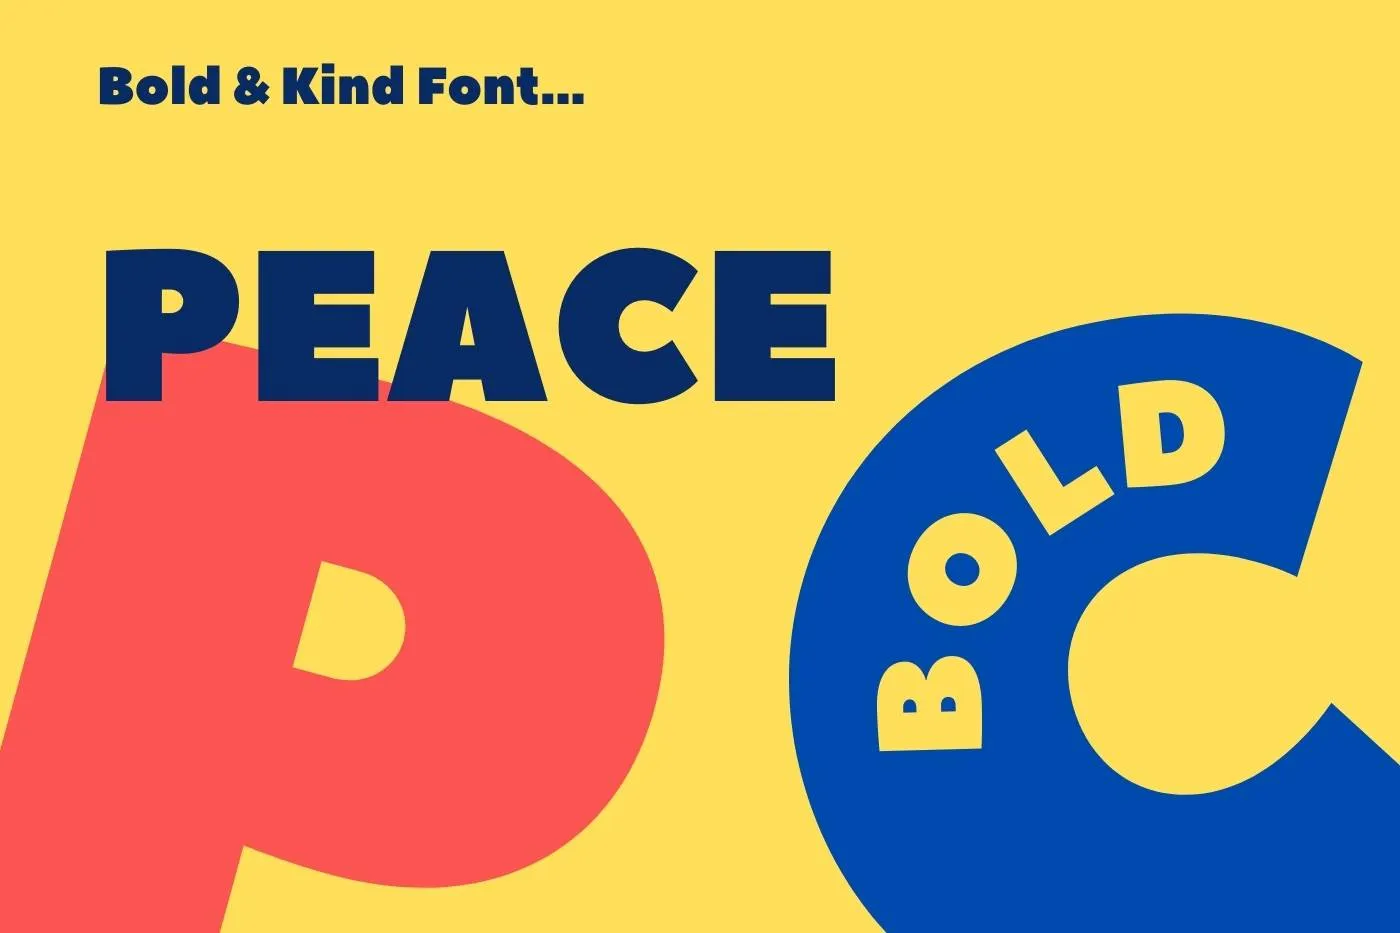 Peace Sans Font